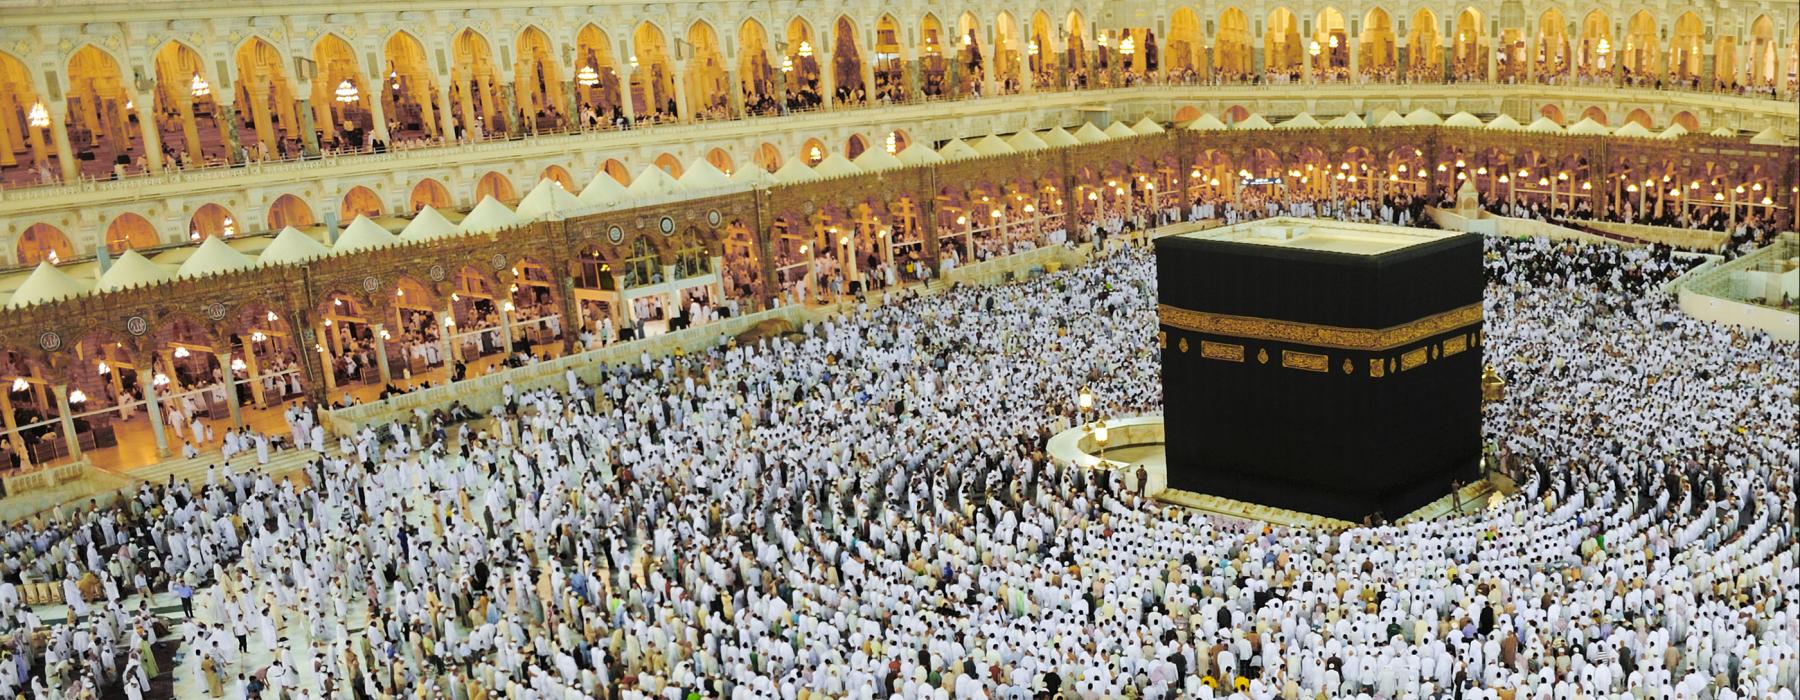 Verlangen naar Mekka